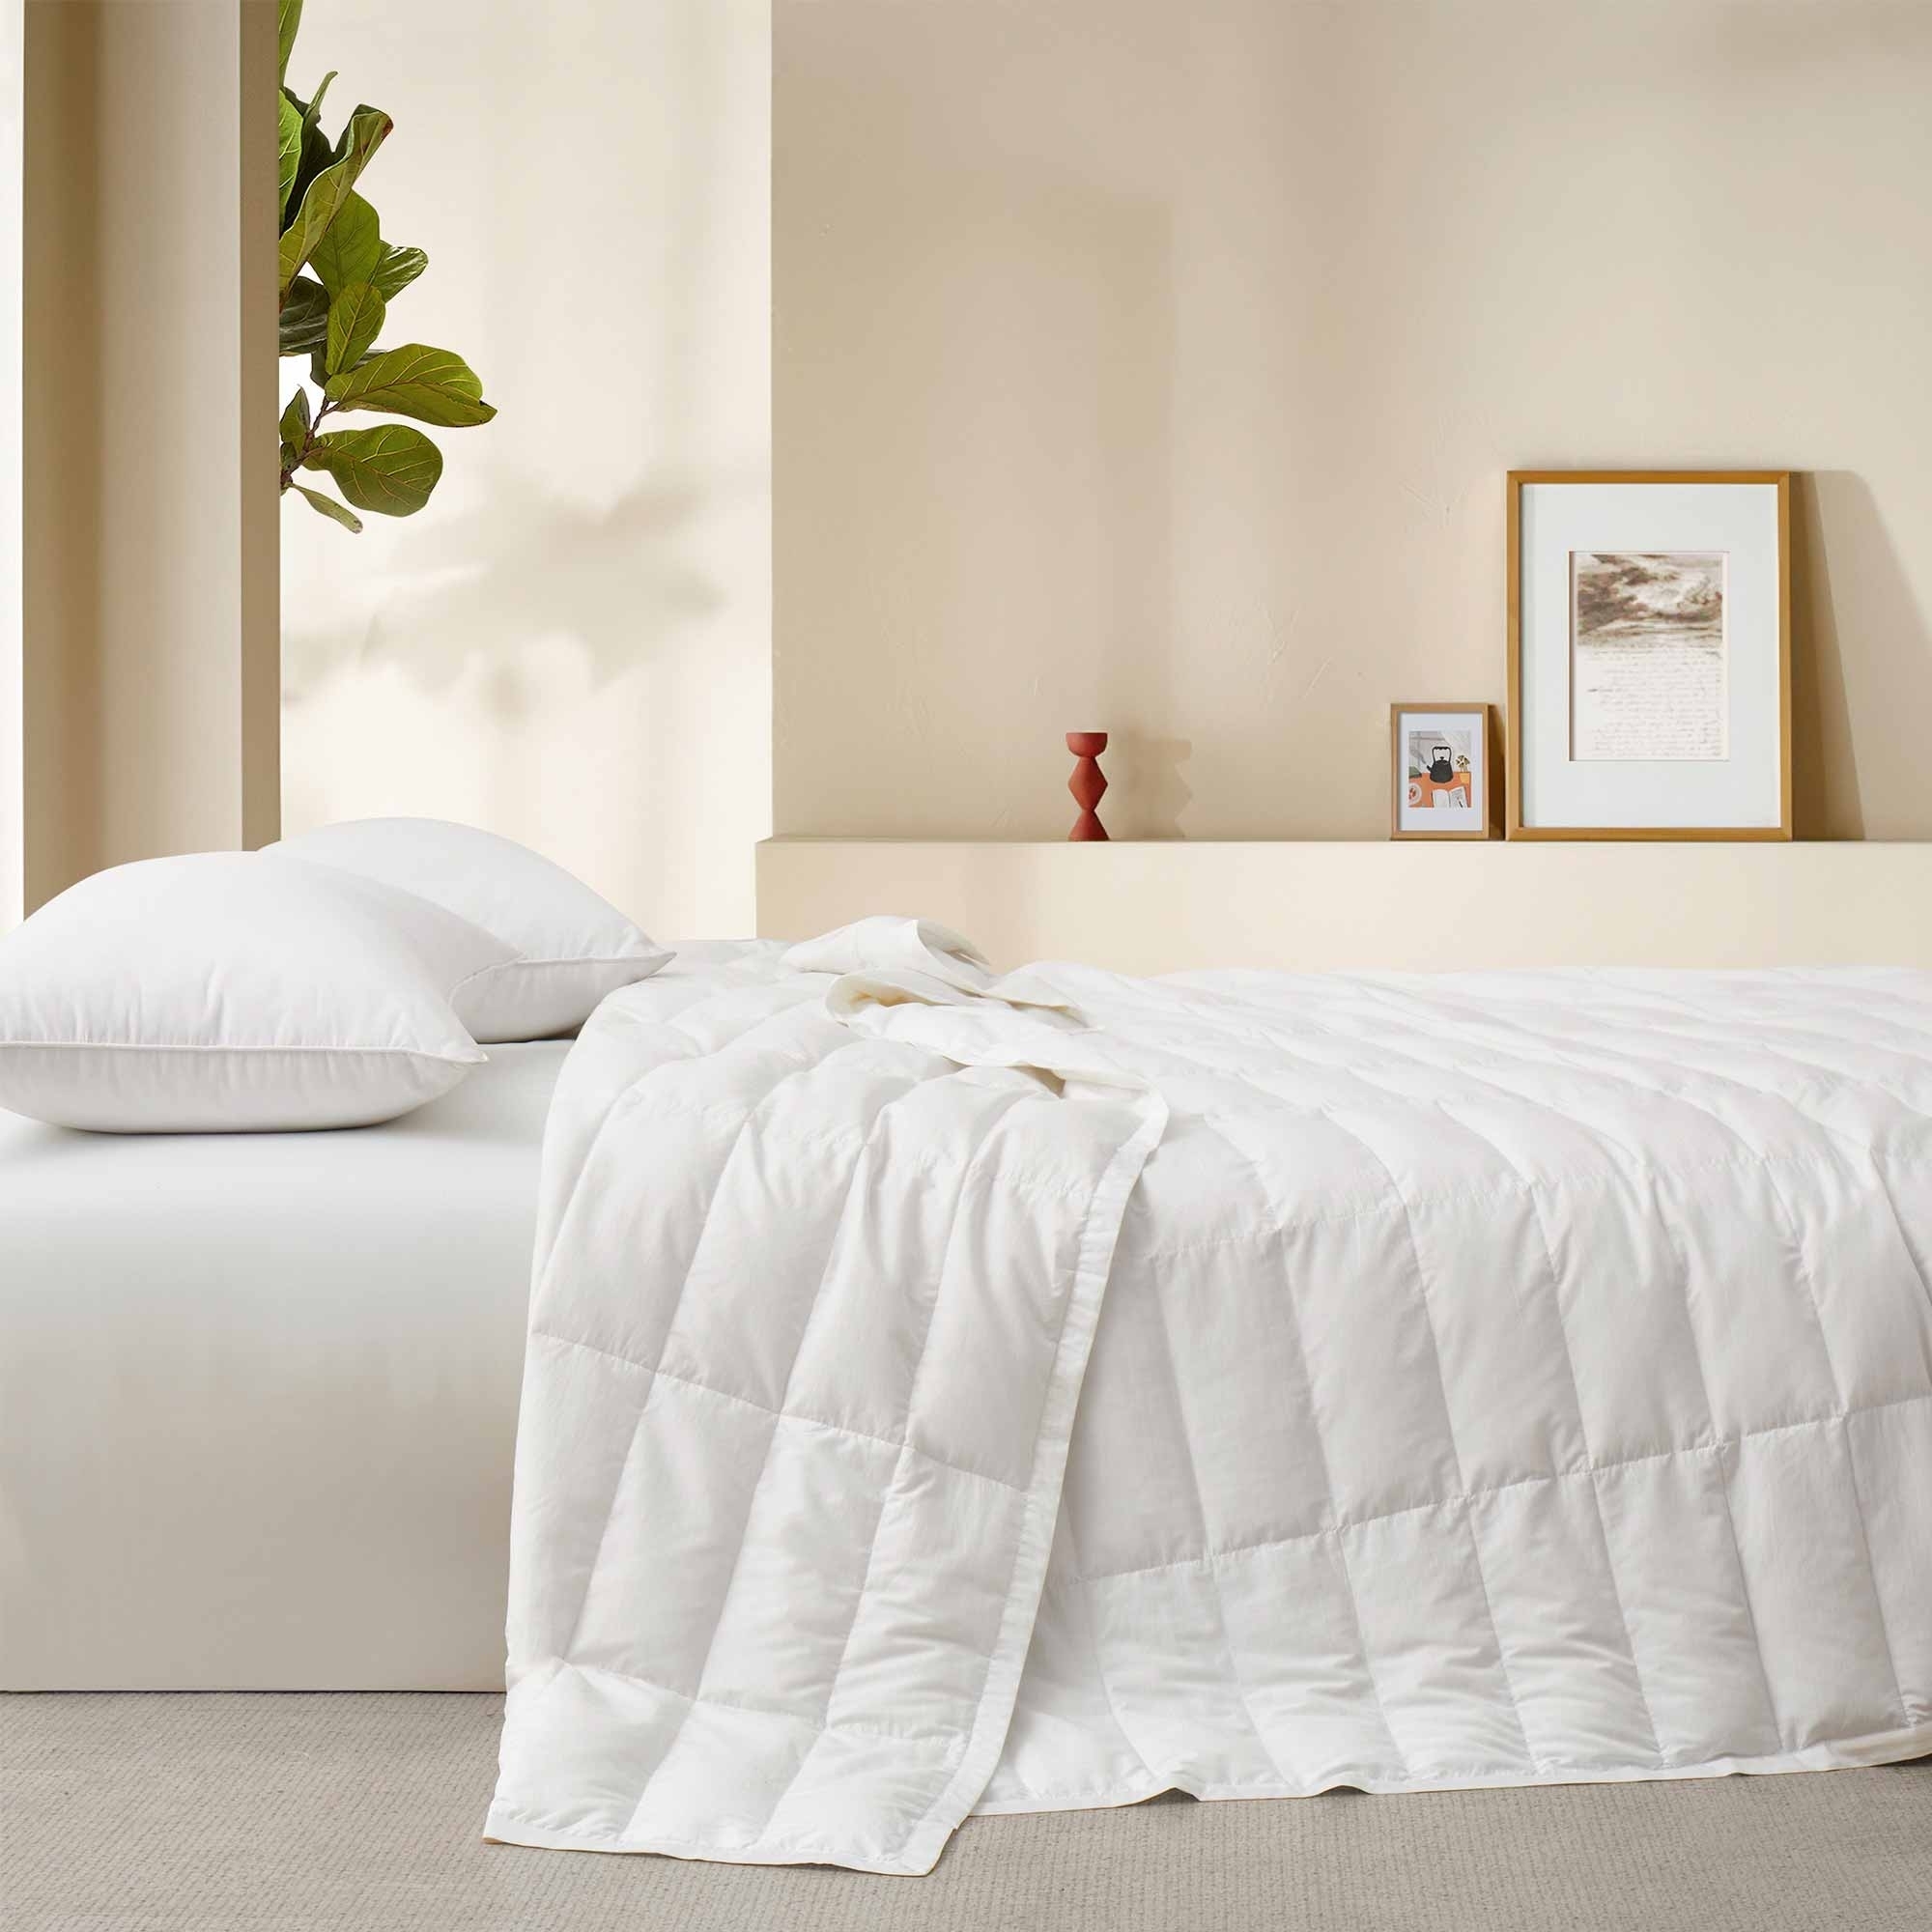 TENCELâ¢ Lyocell Lightweight Cooling Down Blanket-Luxurious Comfort Summer Blanket - White, King